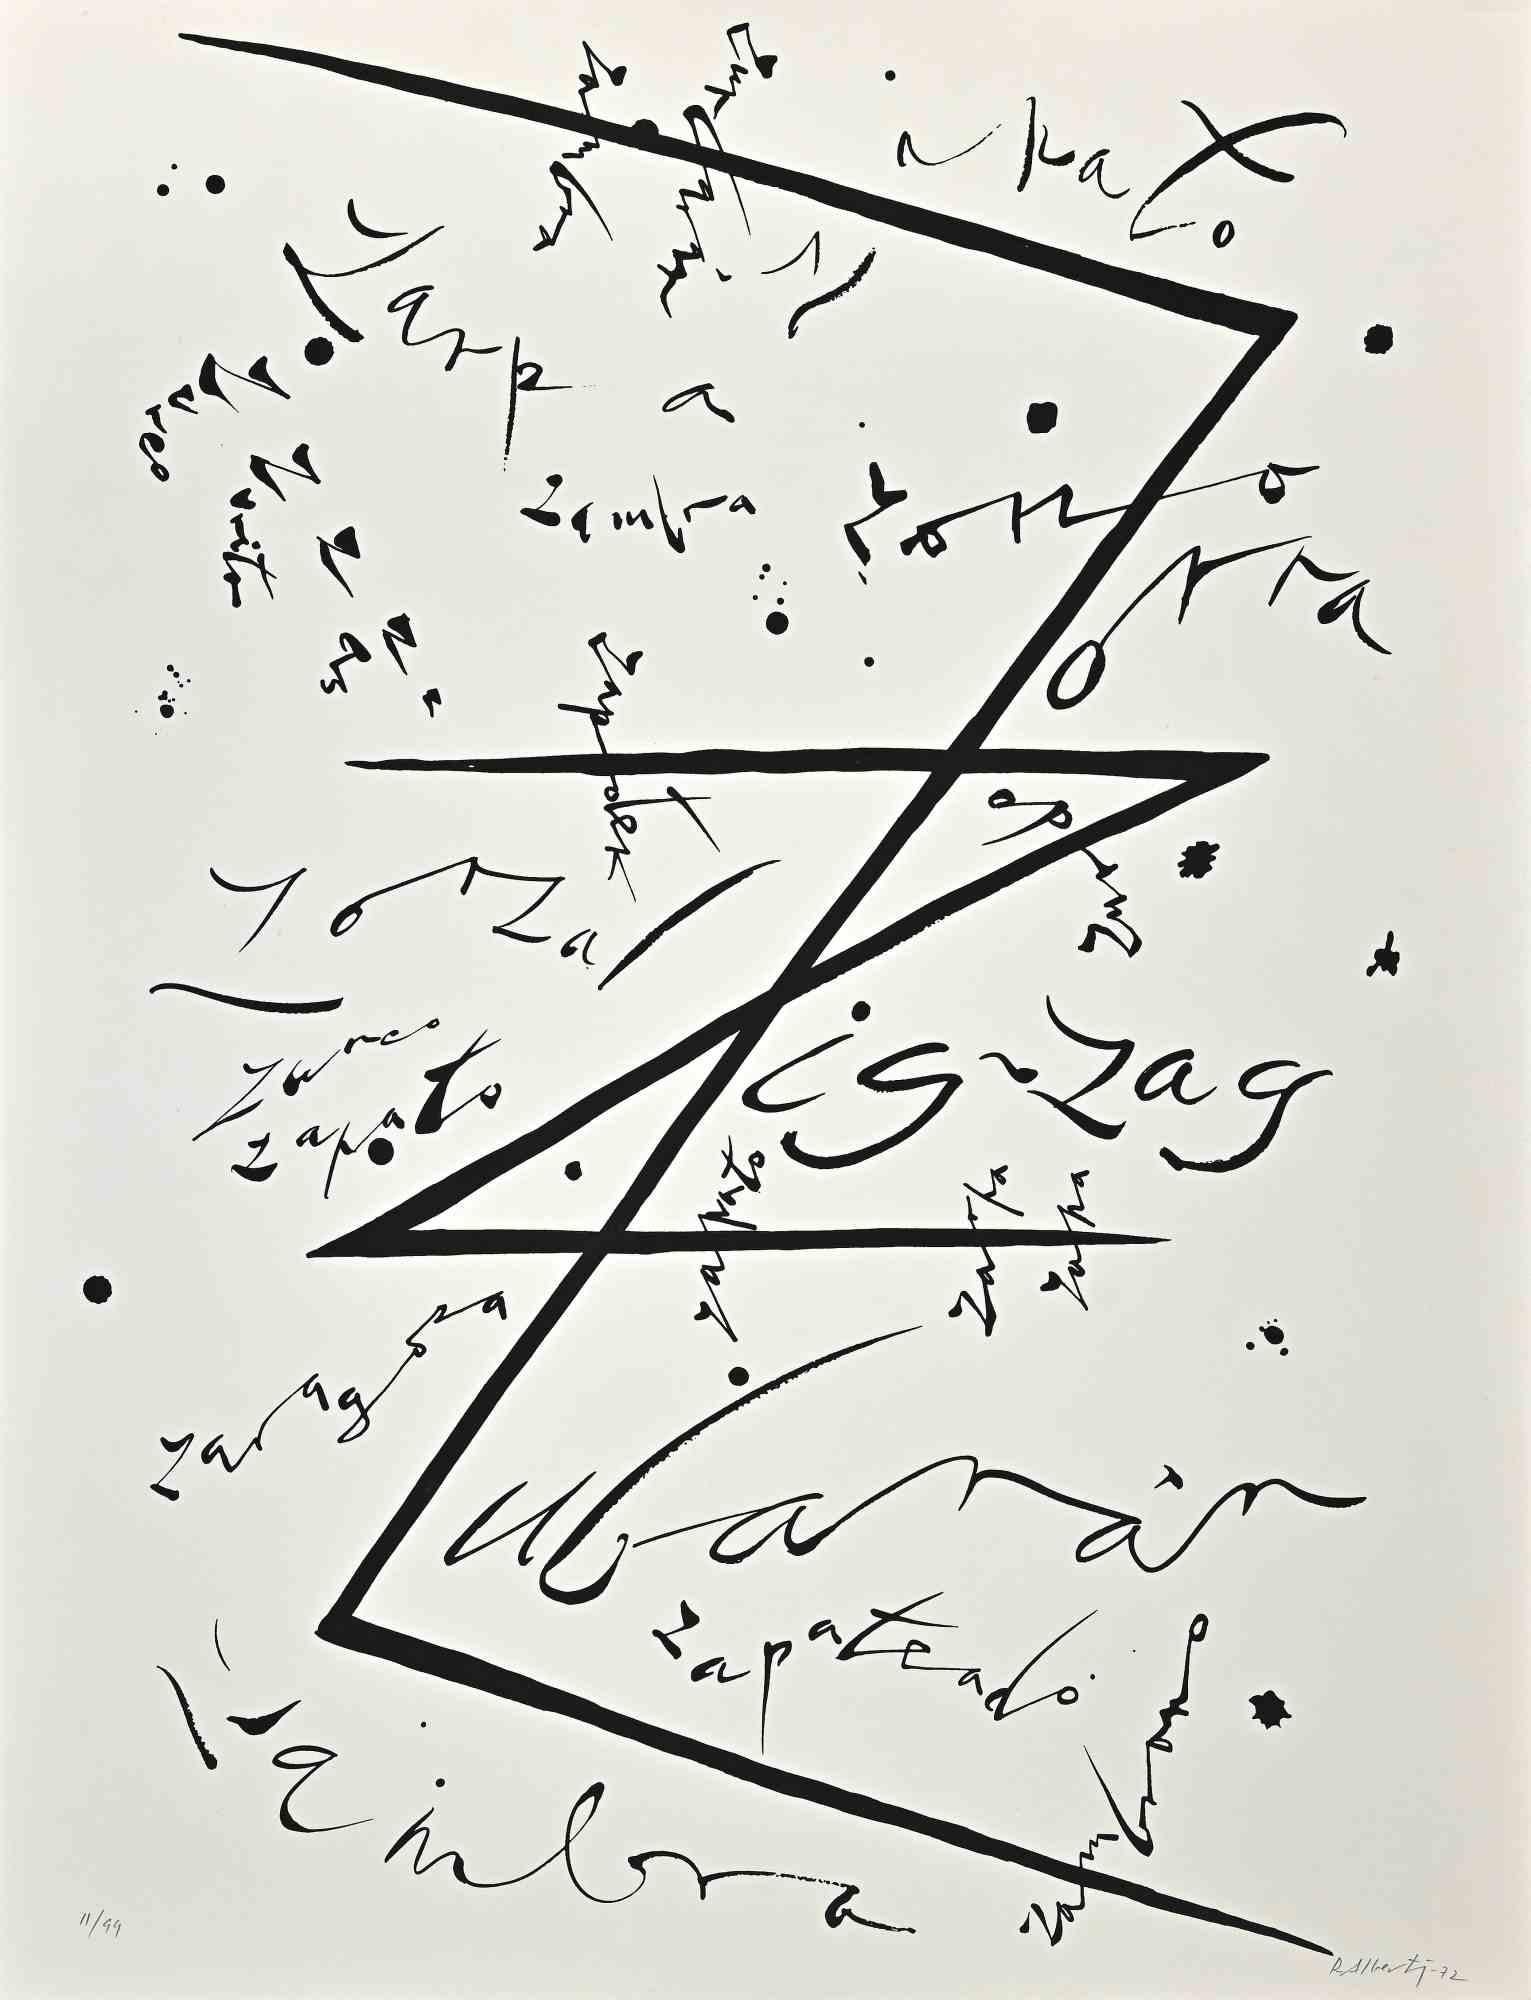 Der Buchstabe Z aus der Serie Alphabet ist eine Lithographie von Rafael Alberti aus dem Jahr 1972.

Am unteren Rand handsigniert und datiert.

Am unteren Rand nummeriert. Ausgabe 11/99

Der Erhaltungszustand ist gut.

Das Kunstwerk stellt Alphabet